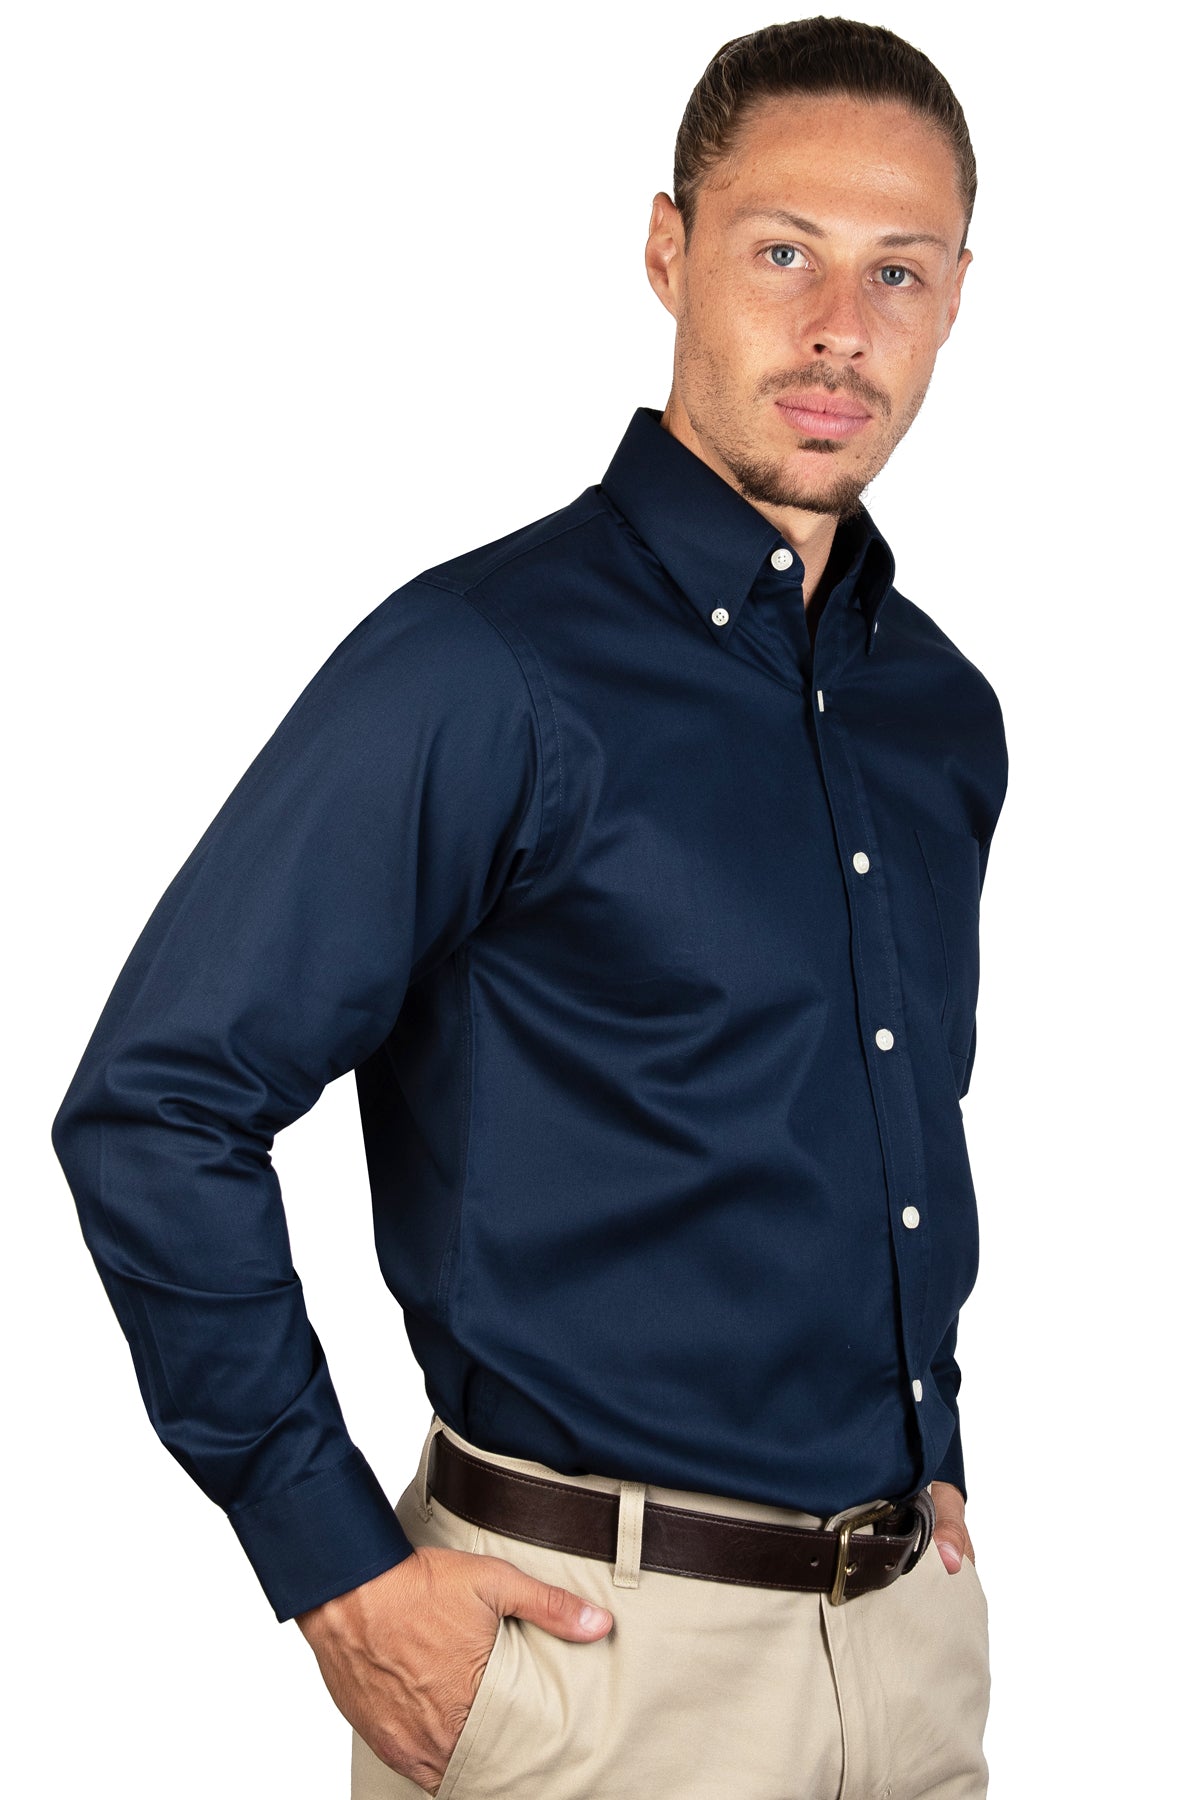 Camisa azul marino lisa para hombre de manga larga, ideal para